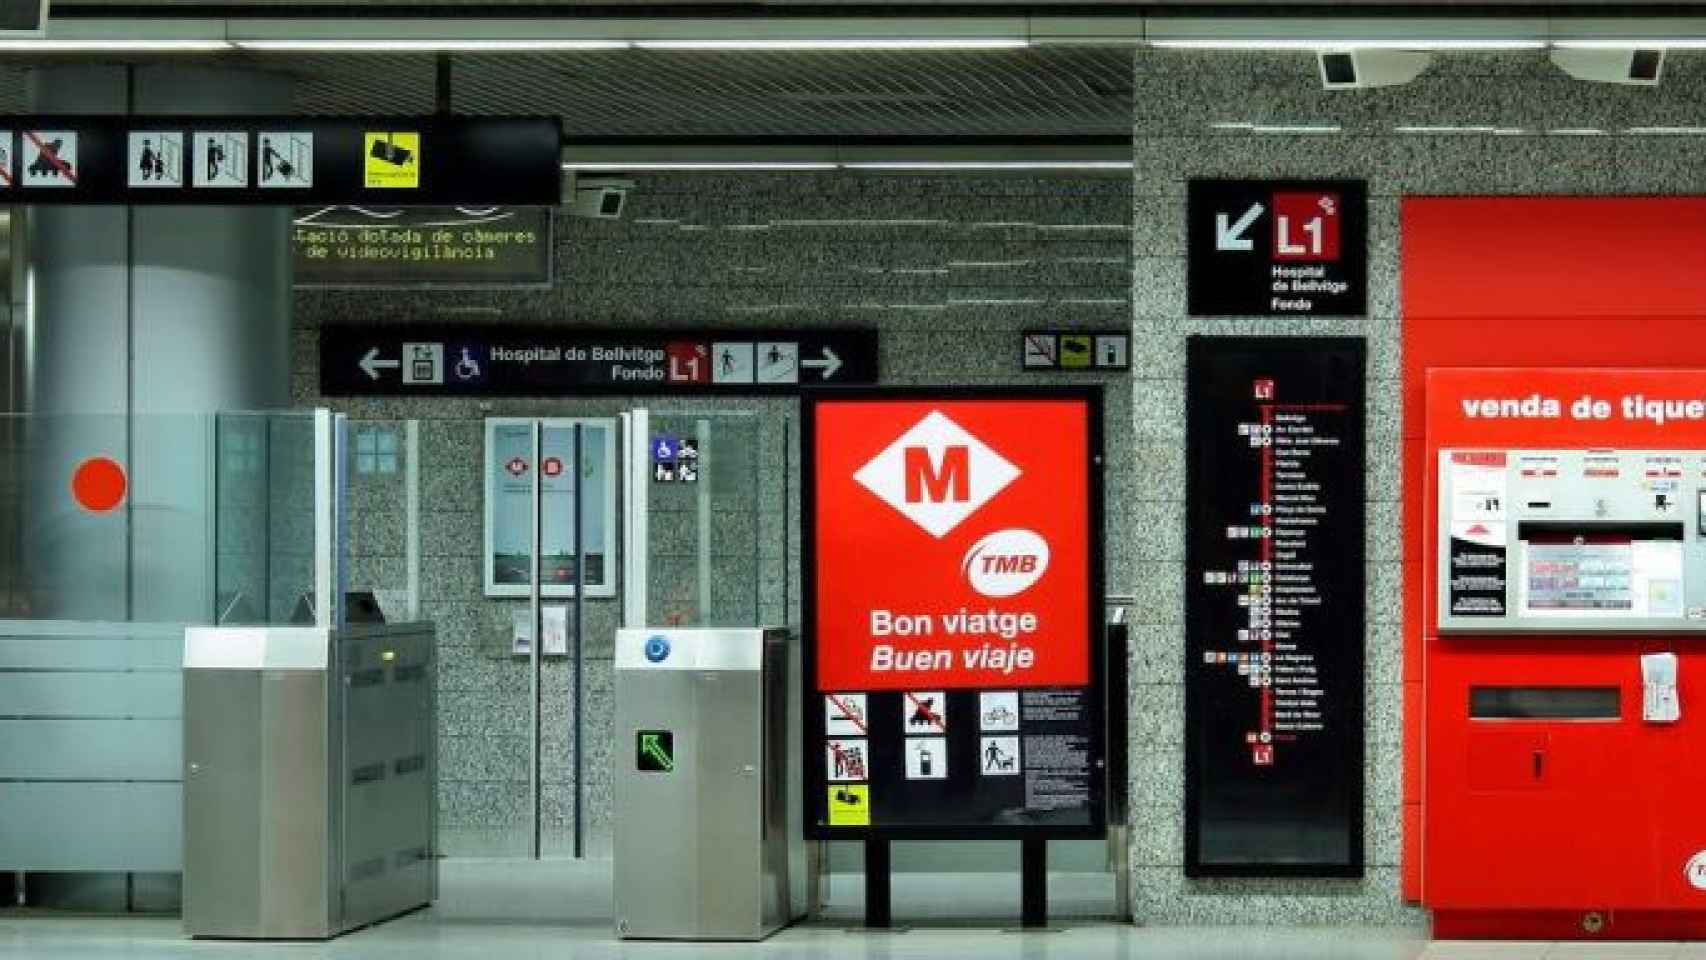 Máquinas expendedoras de billetes en el metro de Barcelona